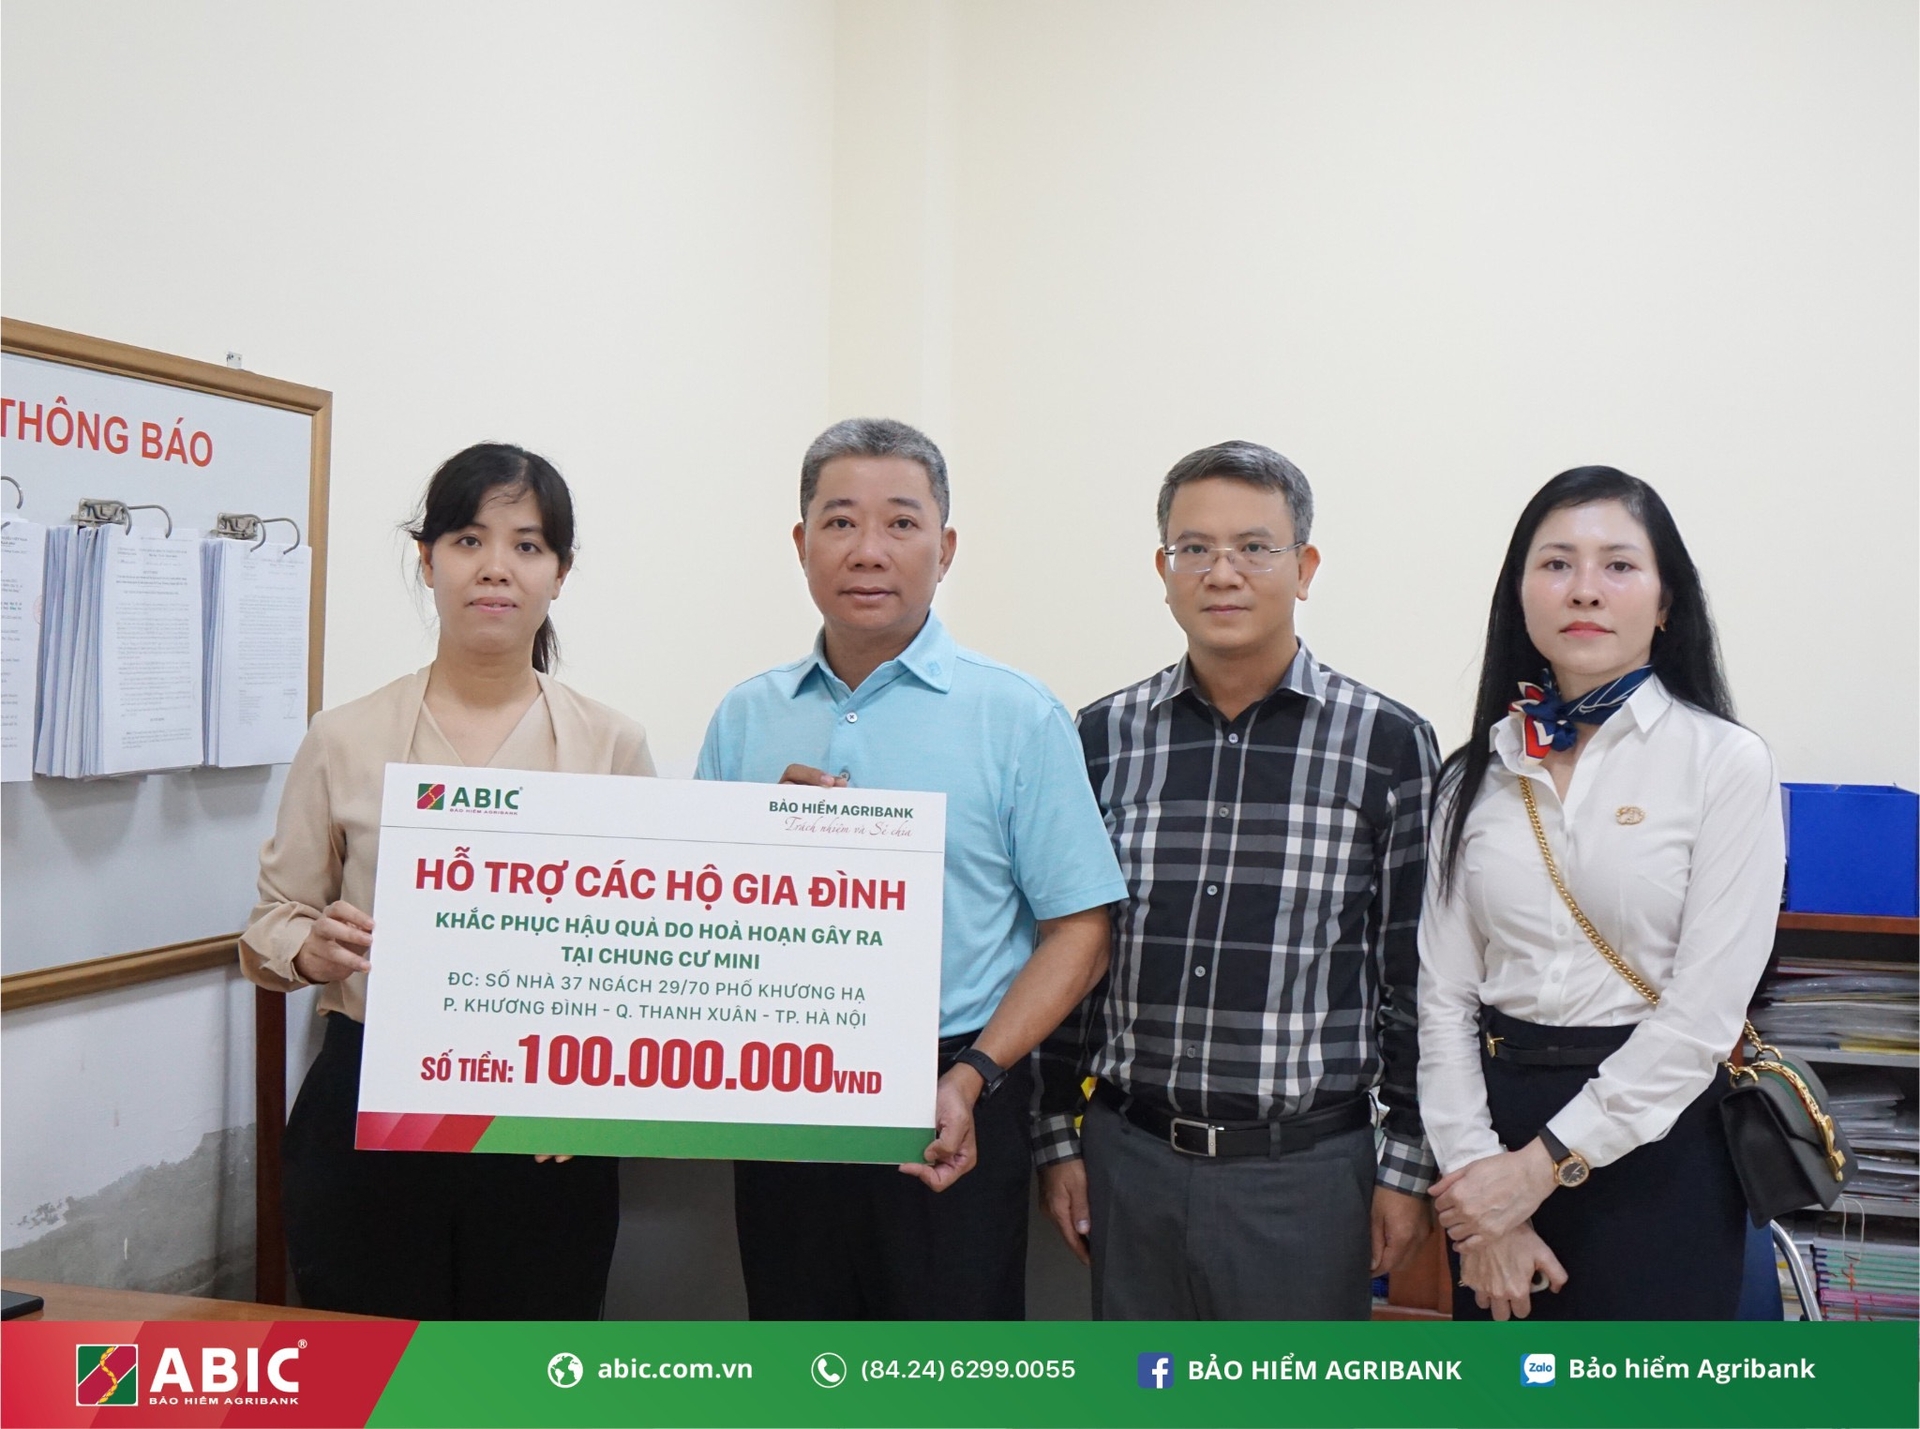 Ông Nguyễn Tiến Hải, Chủ tịch HĐQT Bảo hiểm Agribank (áo xanh) trao số tiền 100 triệu đồng nhằm động viên, hỗ trợ các gia đình và nạn nhân trong vụ cháy chung cư mini tại quận Thanh Xuân. Ảnh: Abic.